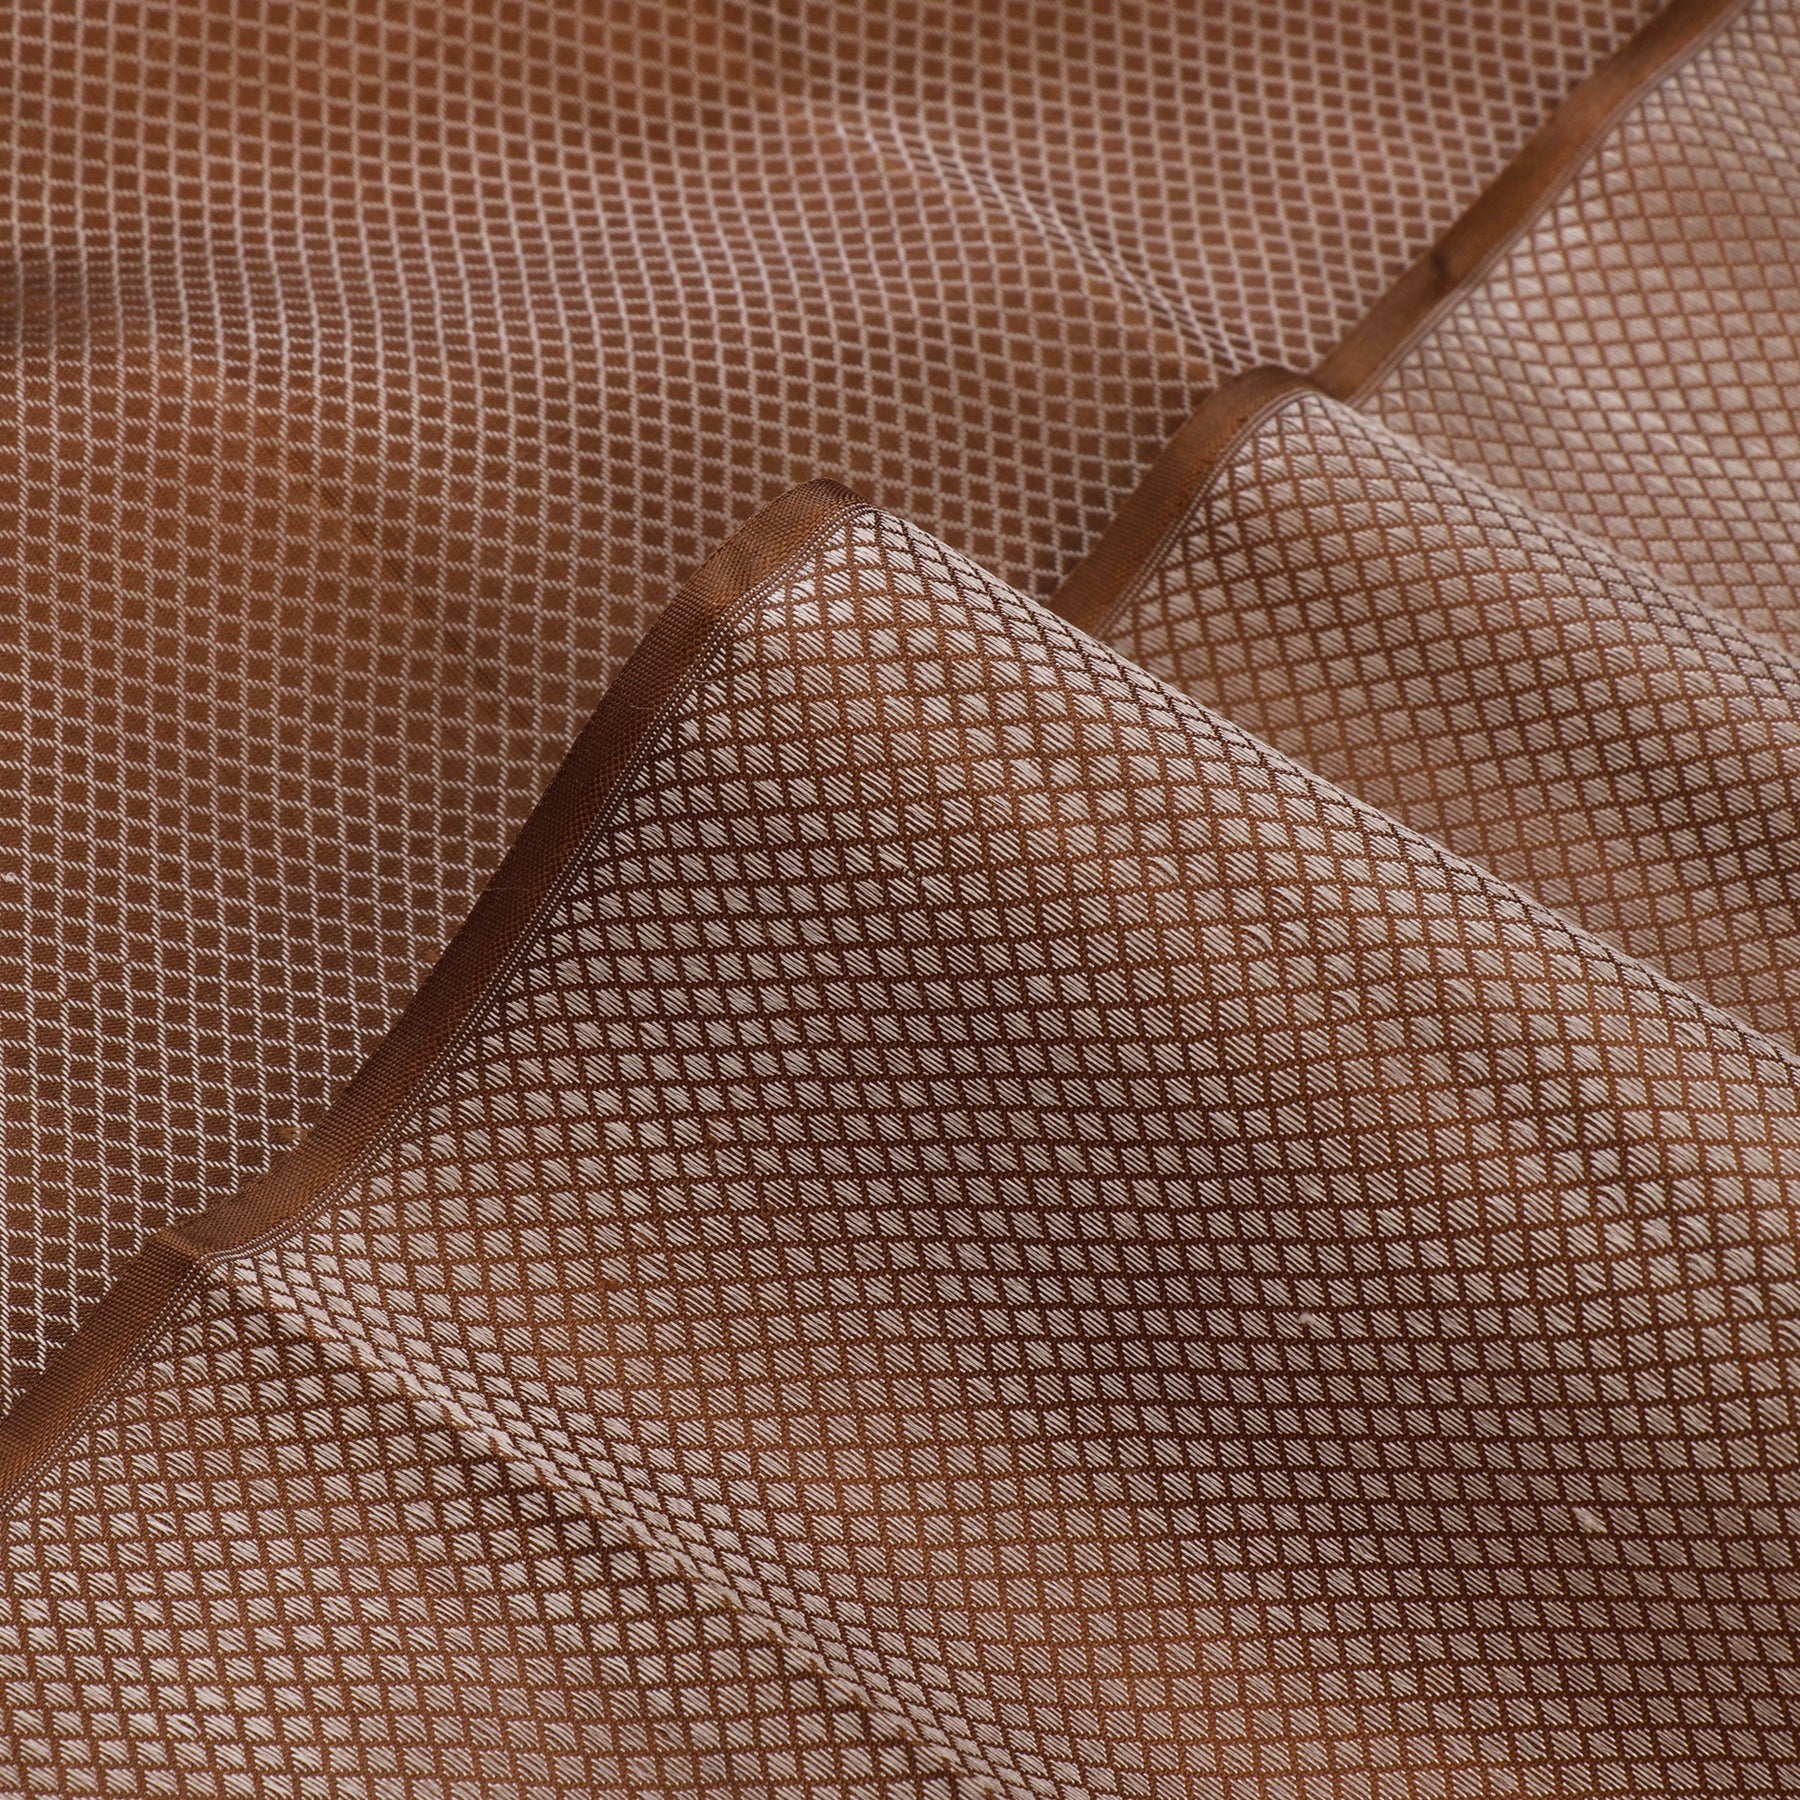 Kanakavalli Kanjivaram Silk Fabric Length 20-110-HF001-01581 - Profile View